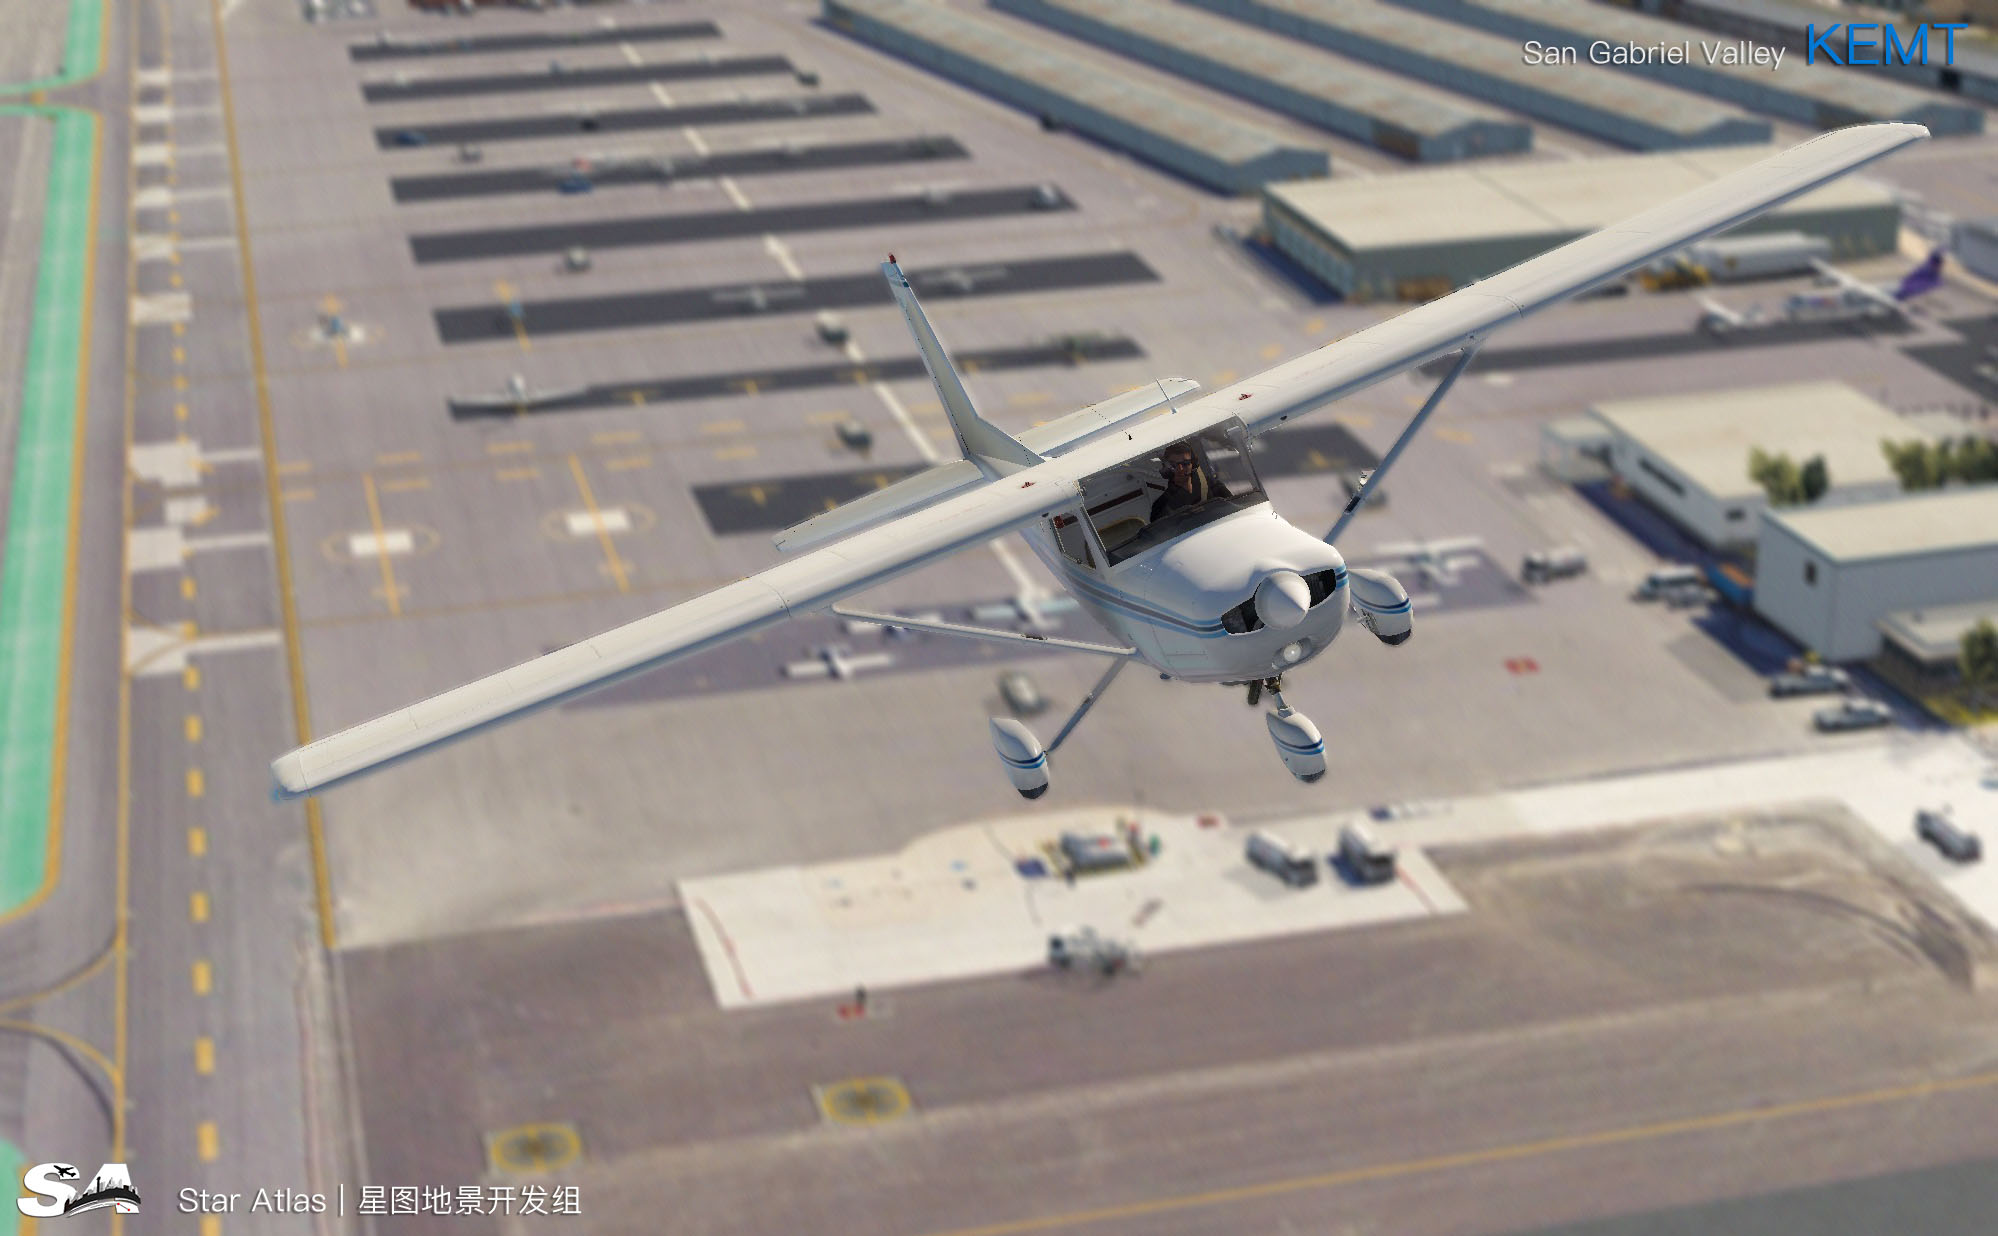 【X-Plane】KEMT-圣盖博谷机场 HD 1.0-6159 